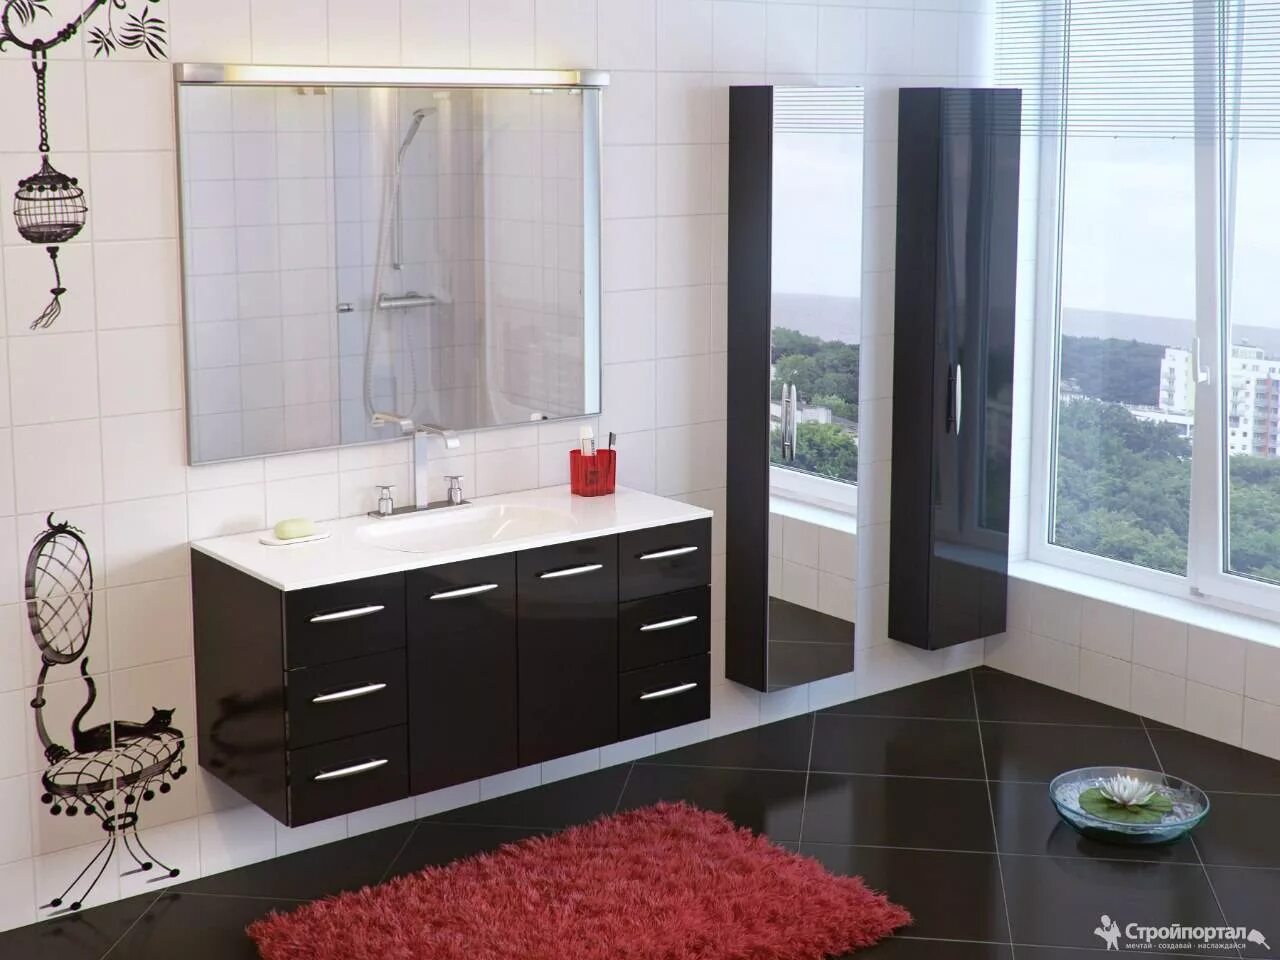 Мебель для ванны материалы. Мебель для ванной комнаты. Красивая мебель для ванной комнаты. Комплект мебели в ванную комнату. Стильная ванная мебель.